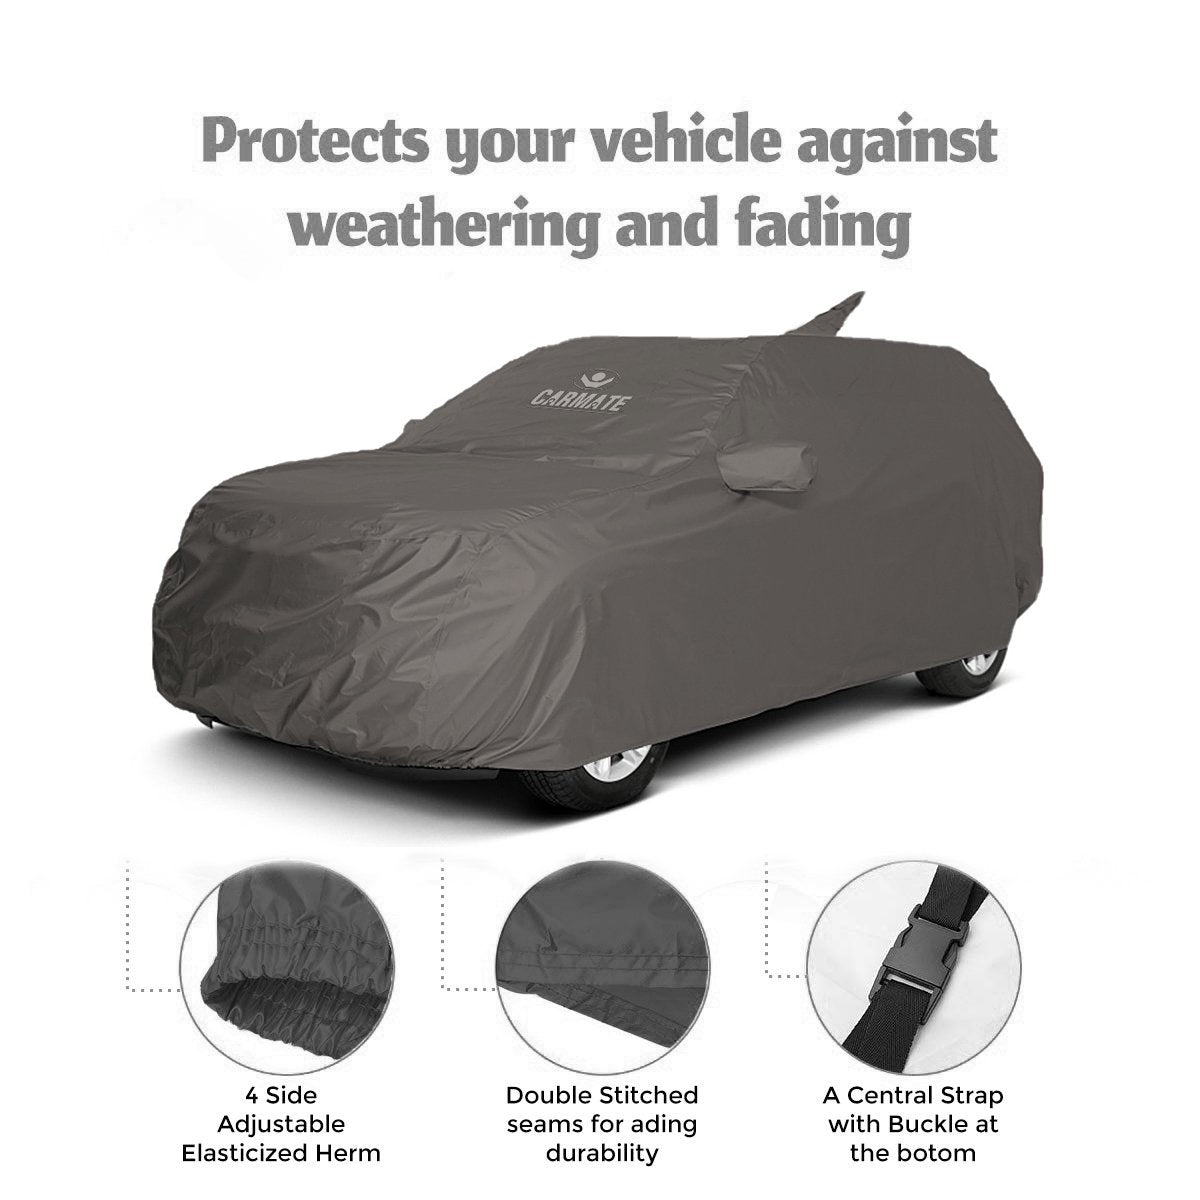 Carmate Car Body Cover 100% Waterproof Pride (Grey) for Maruti - Alto 800 - CARMATE®